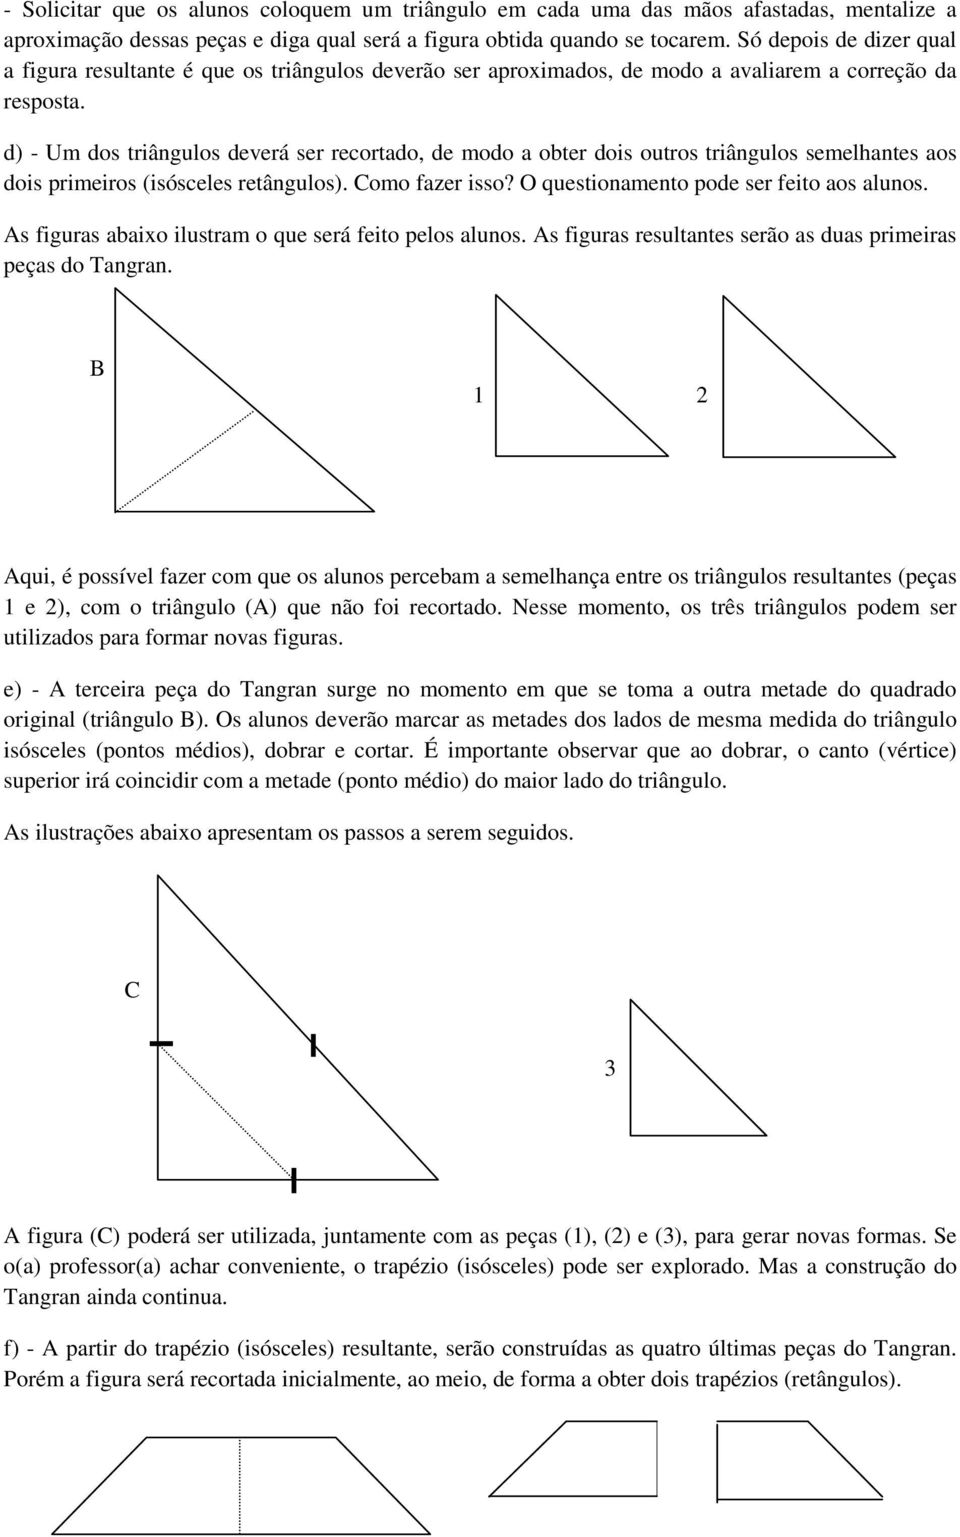 d) - Um dos triângulos deverá ser recortado, de modo a obter dois outros triângulos semelhantes aos dois primeiros (isósceles retângulos). Como fazer isso? O questionamento pode ser feito aos alunos.